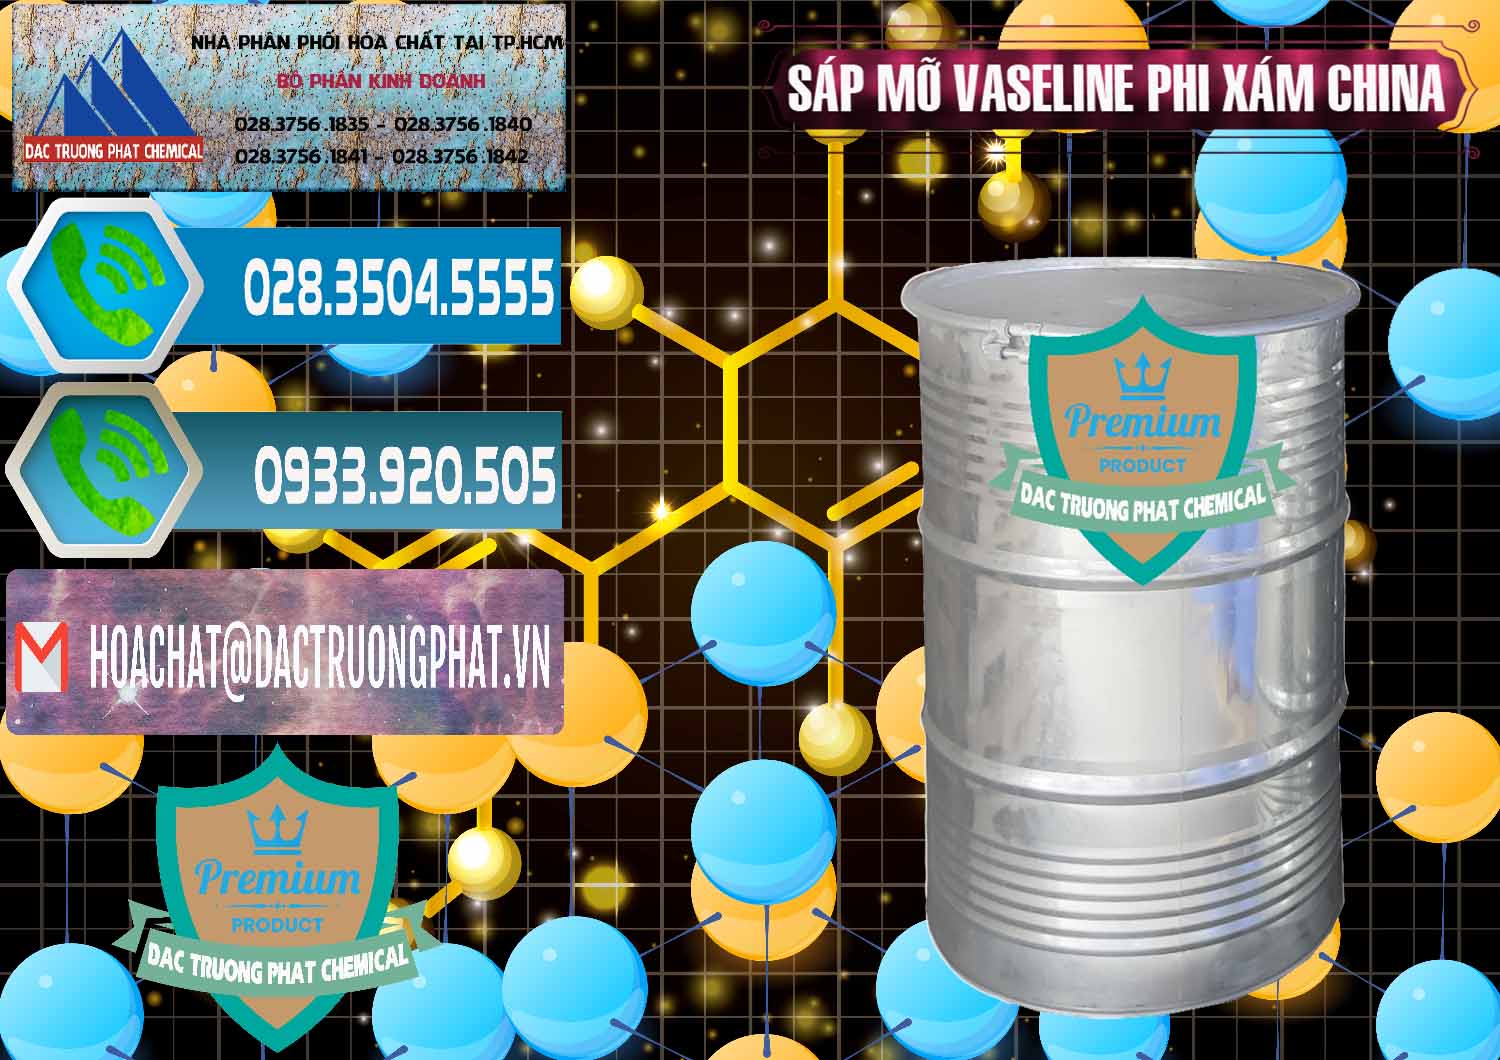 Nơi chuyên cung cấp - bán Sáp Mỡ Vaseline Phi Xám Trung Quốc China - 0291 - Chuyên phân phối - cung cấp hóa chất tại TP.HCM - congtyhoachat.net